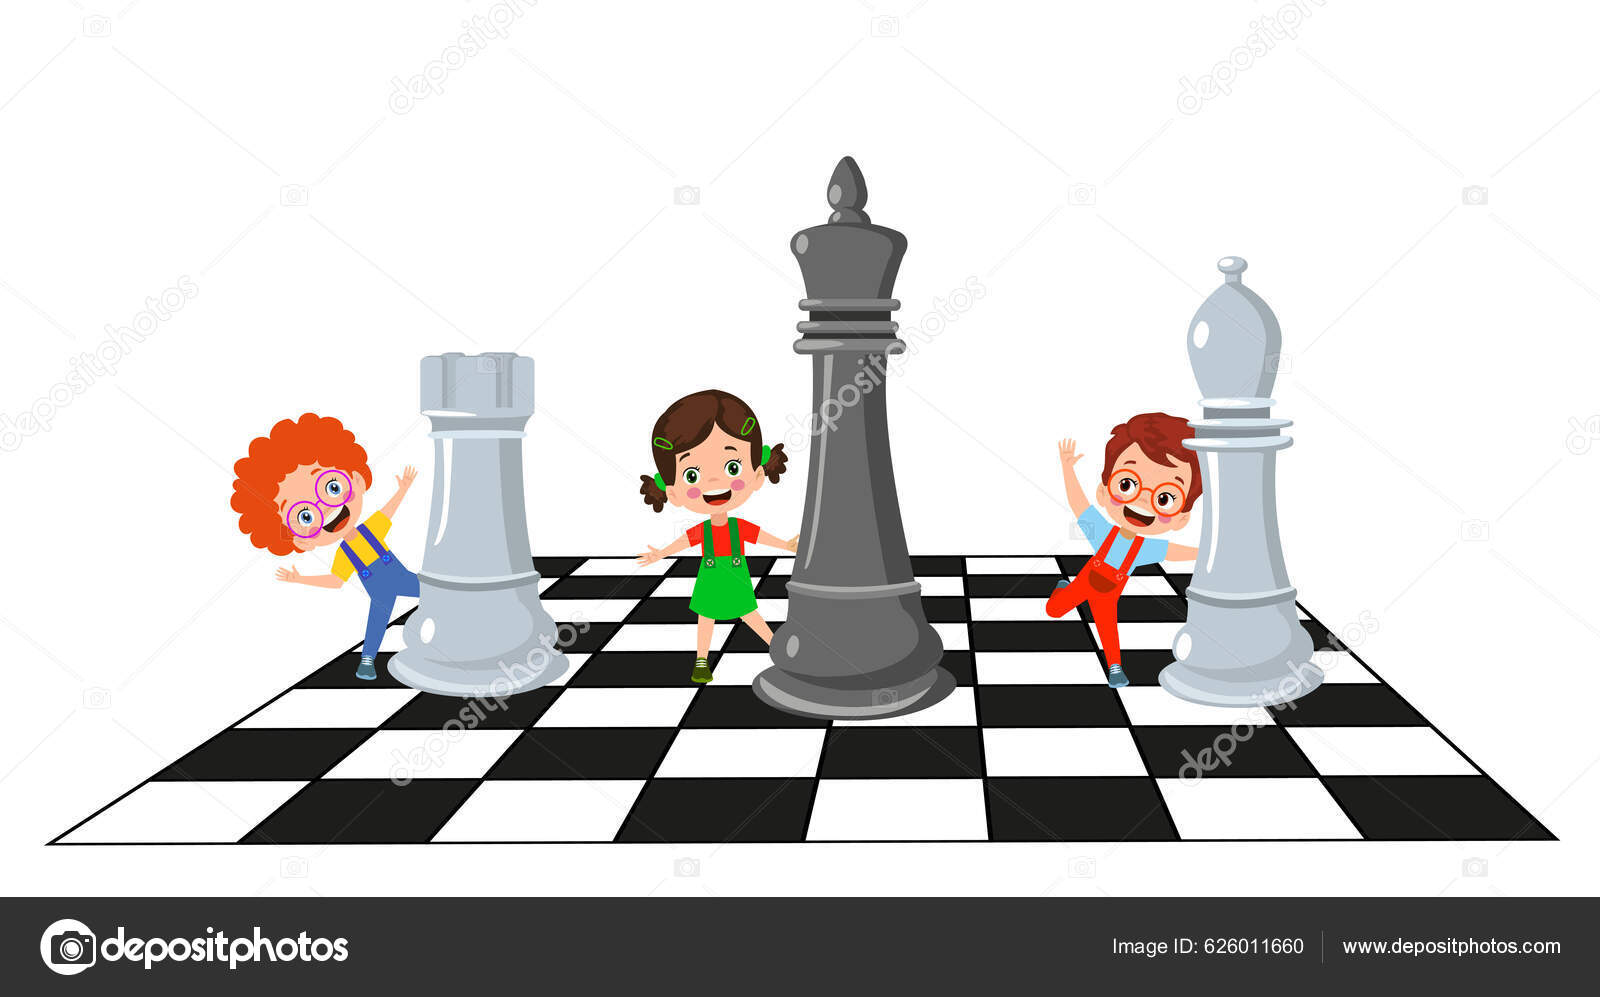 Personagem de desenho animado, jogando jogo de xadrez